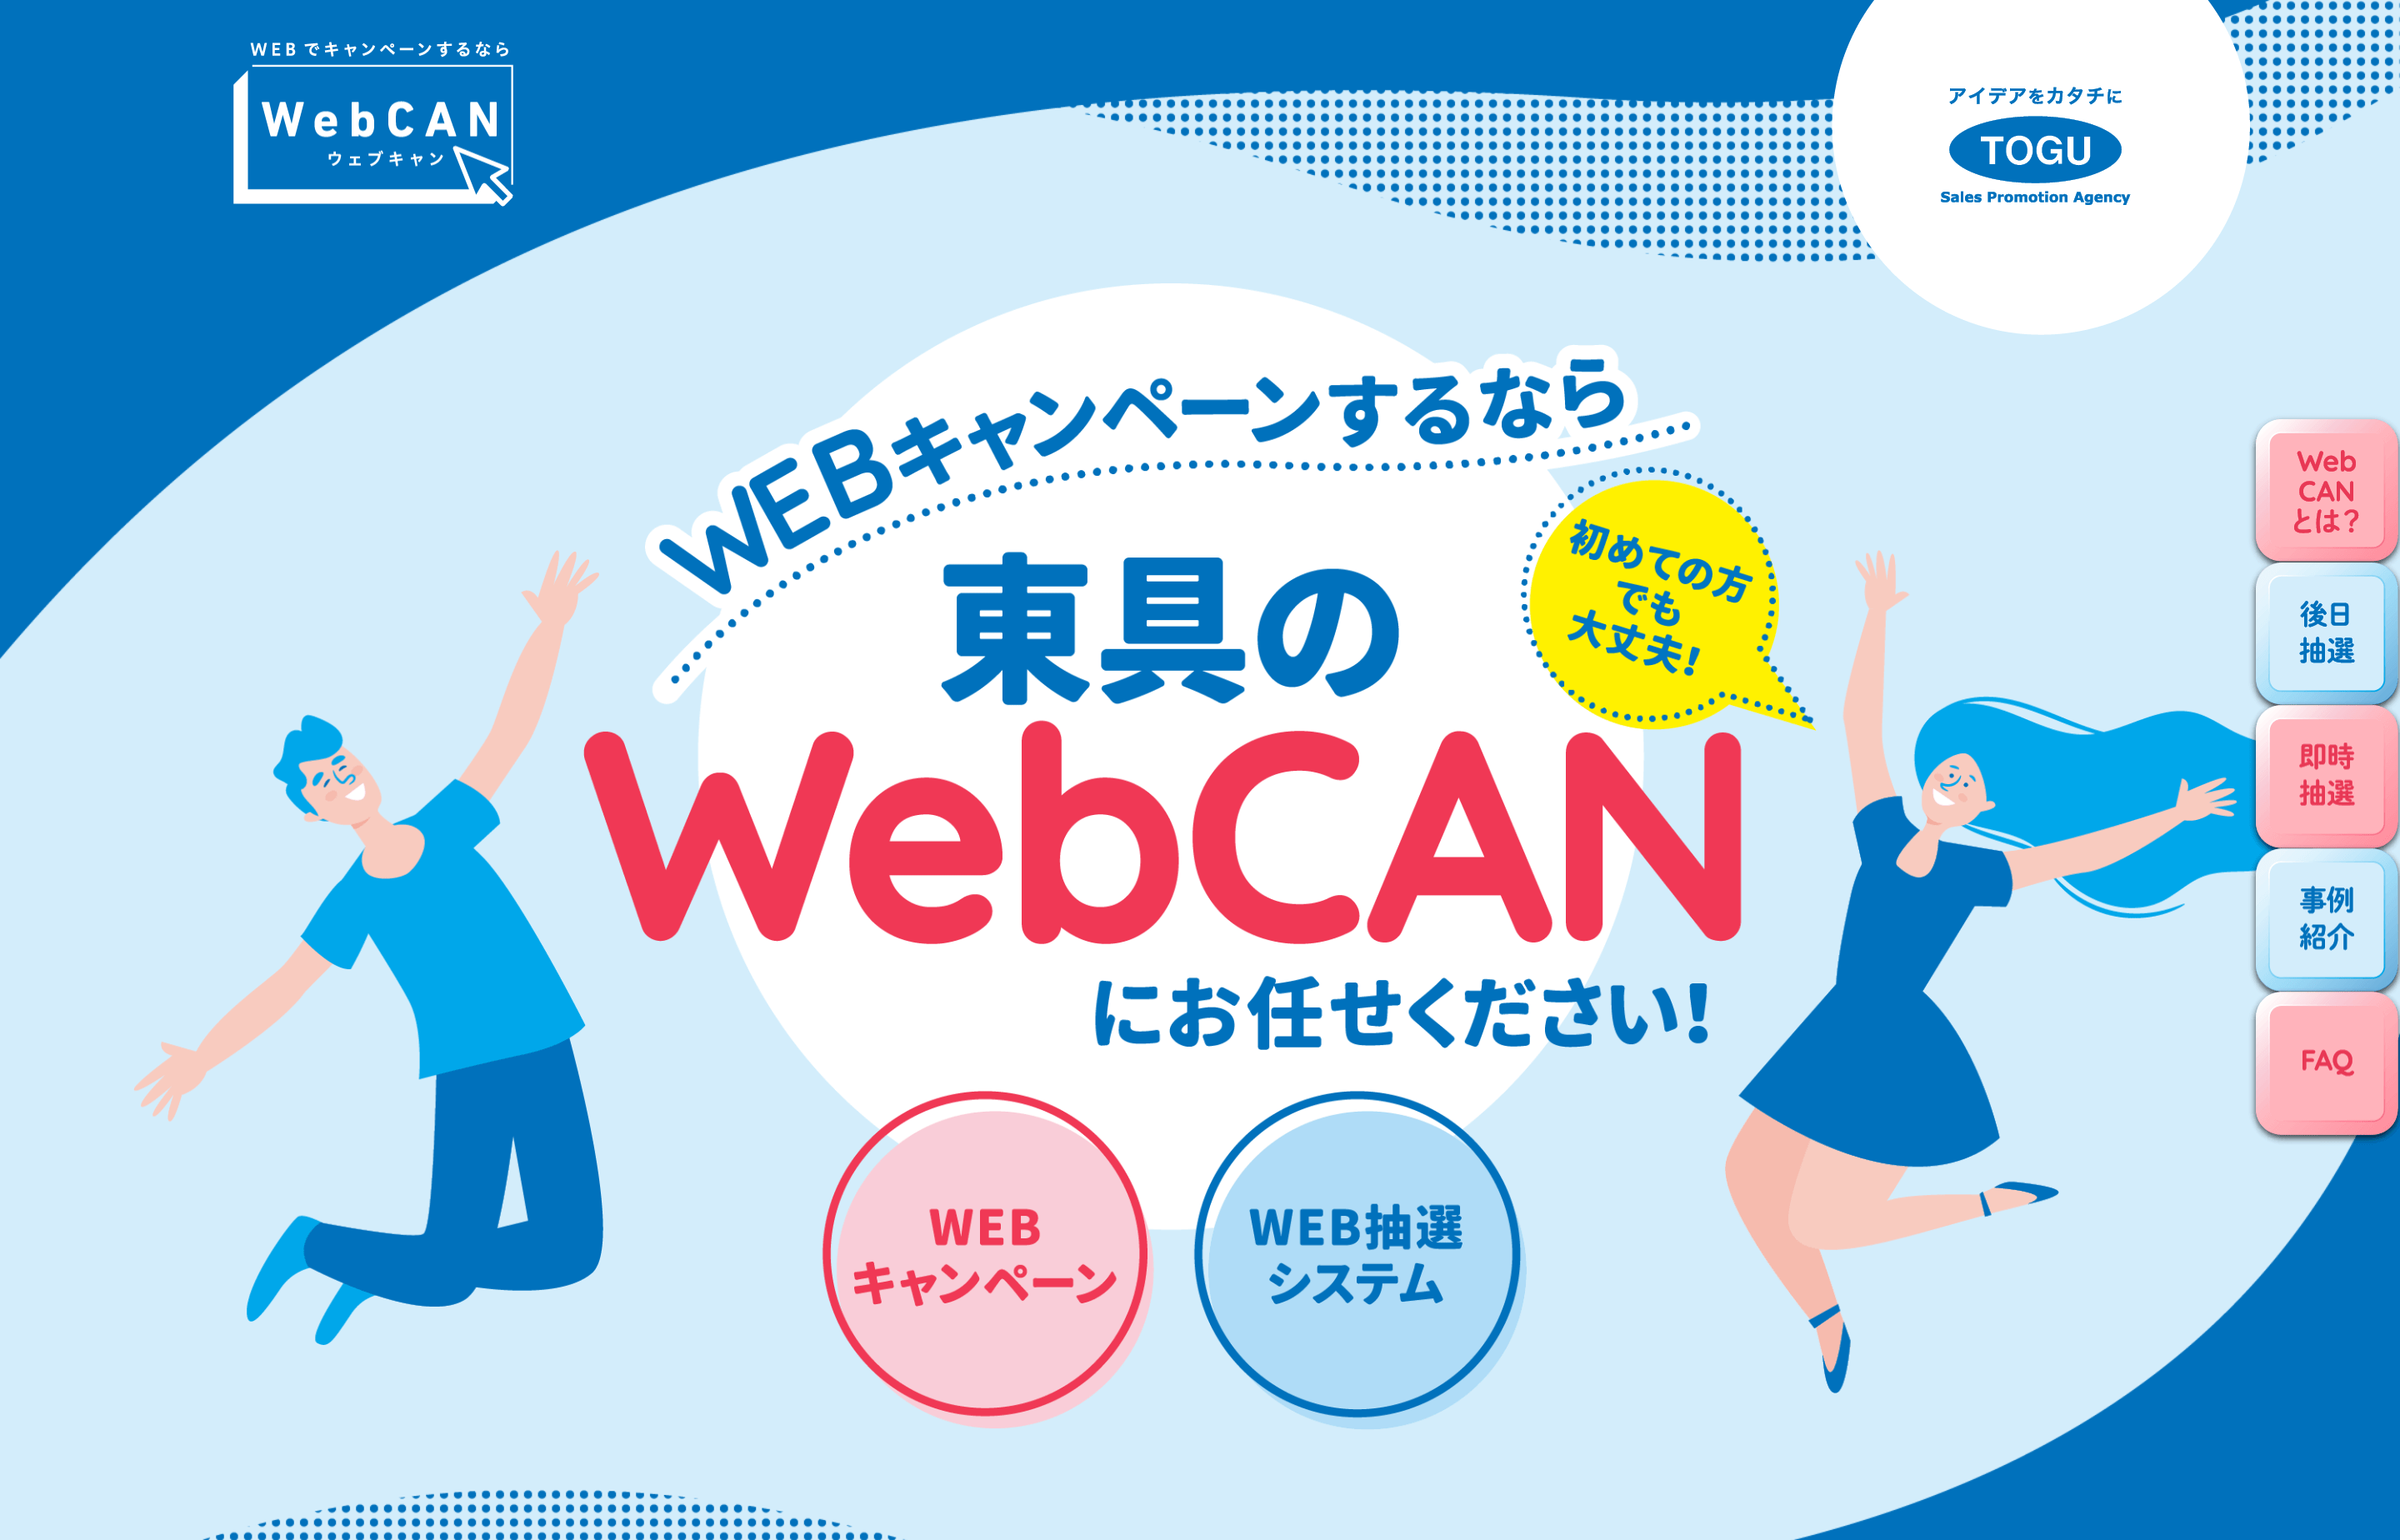 WebCANの特徴や注目ポイント・料金などについて徹底リサーチ